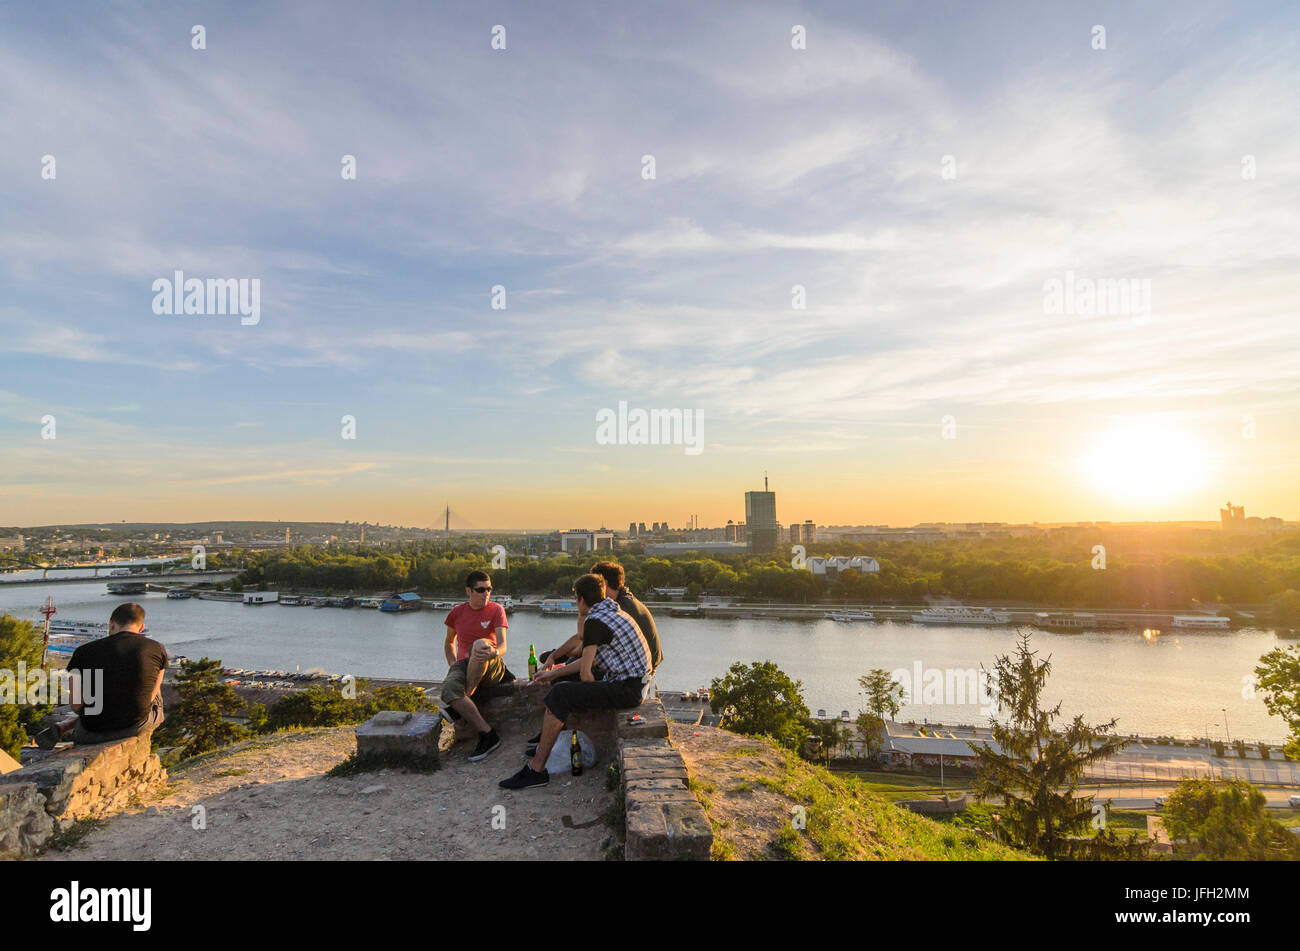 Festung mit dem Kalemegdan-Park, anzeigen, speichern und Novi Beograd mit der Genex-Turm, Serbien, Belgrad Stockfoto